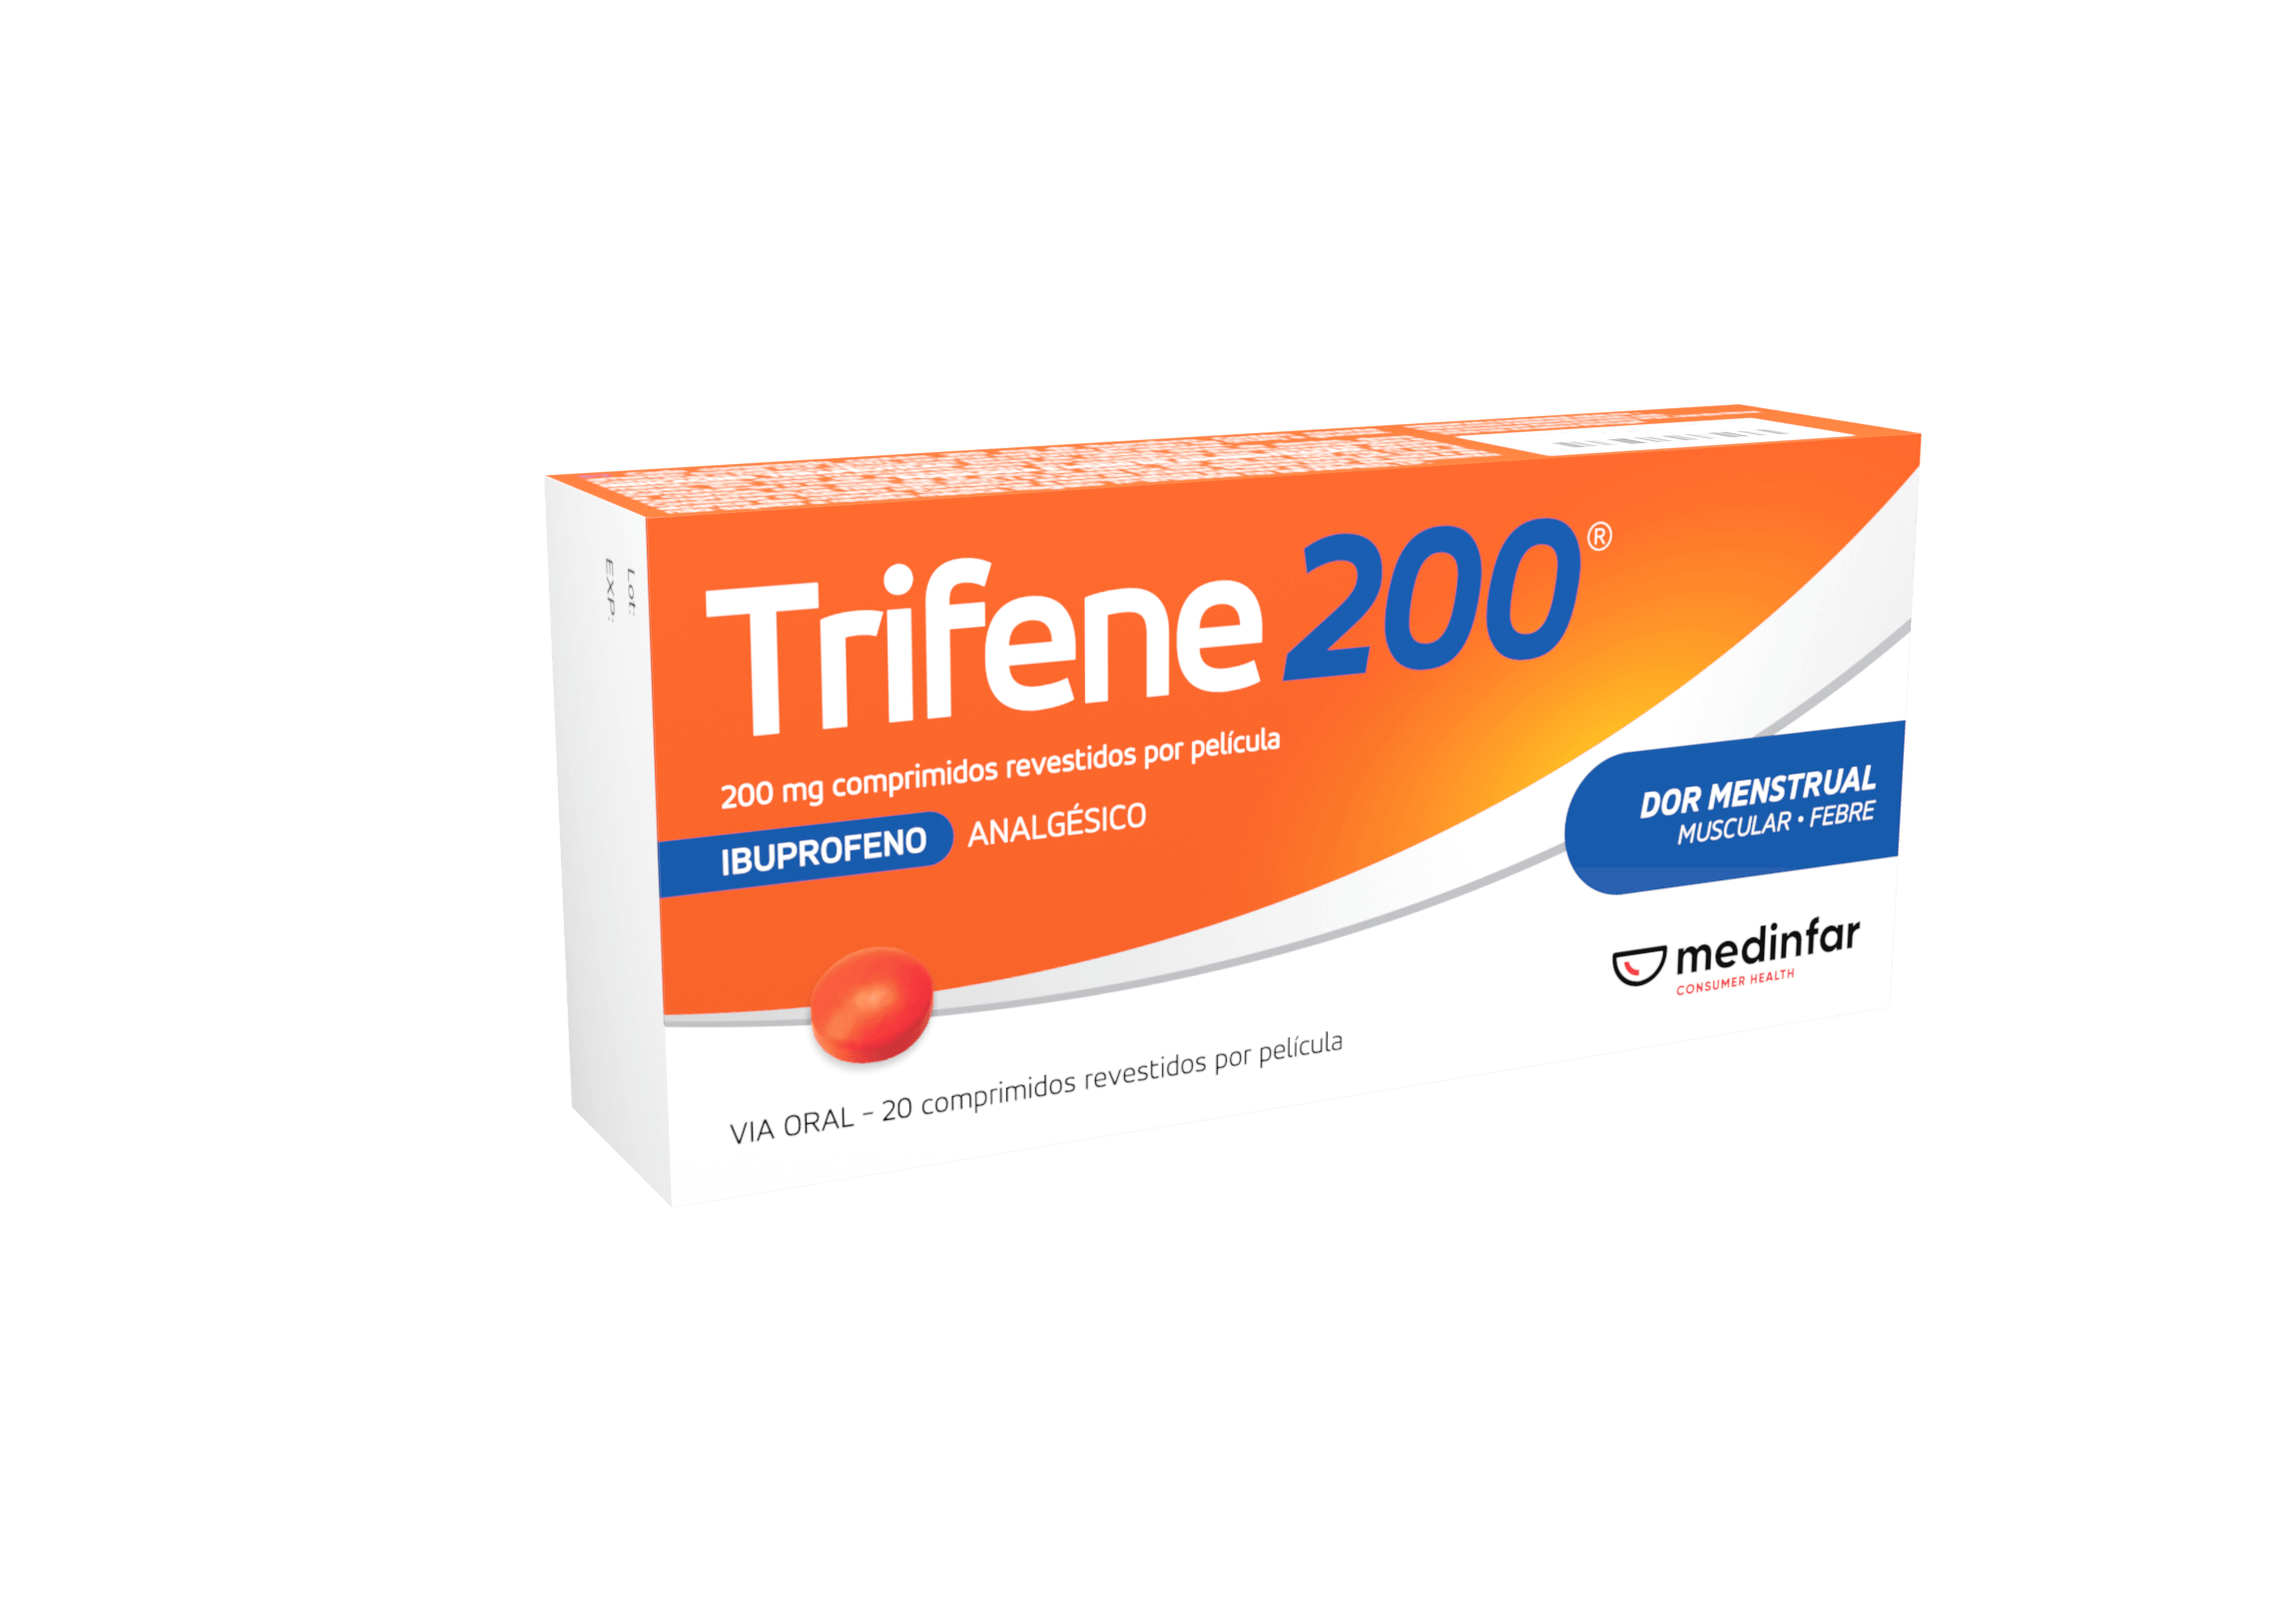 Trifene® 200 MNSRM